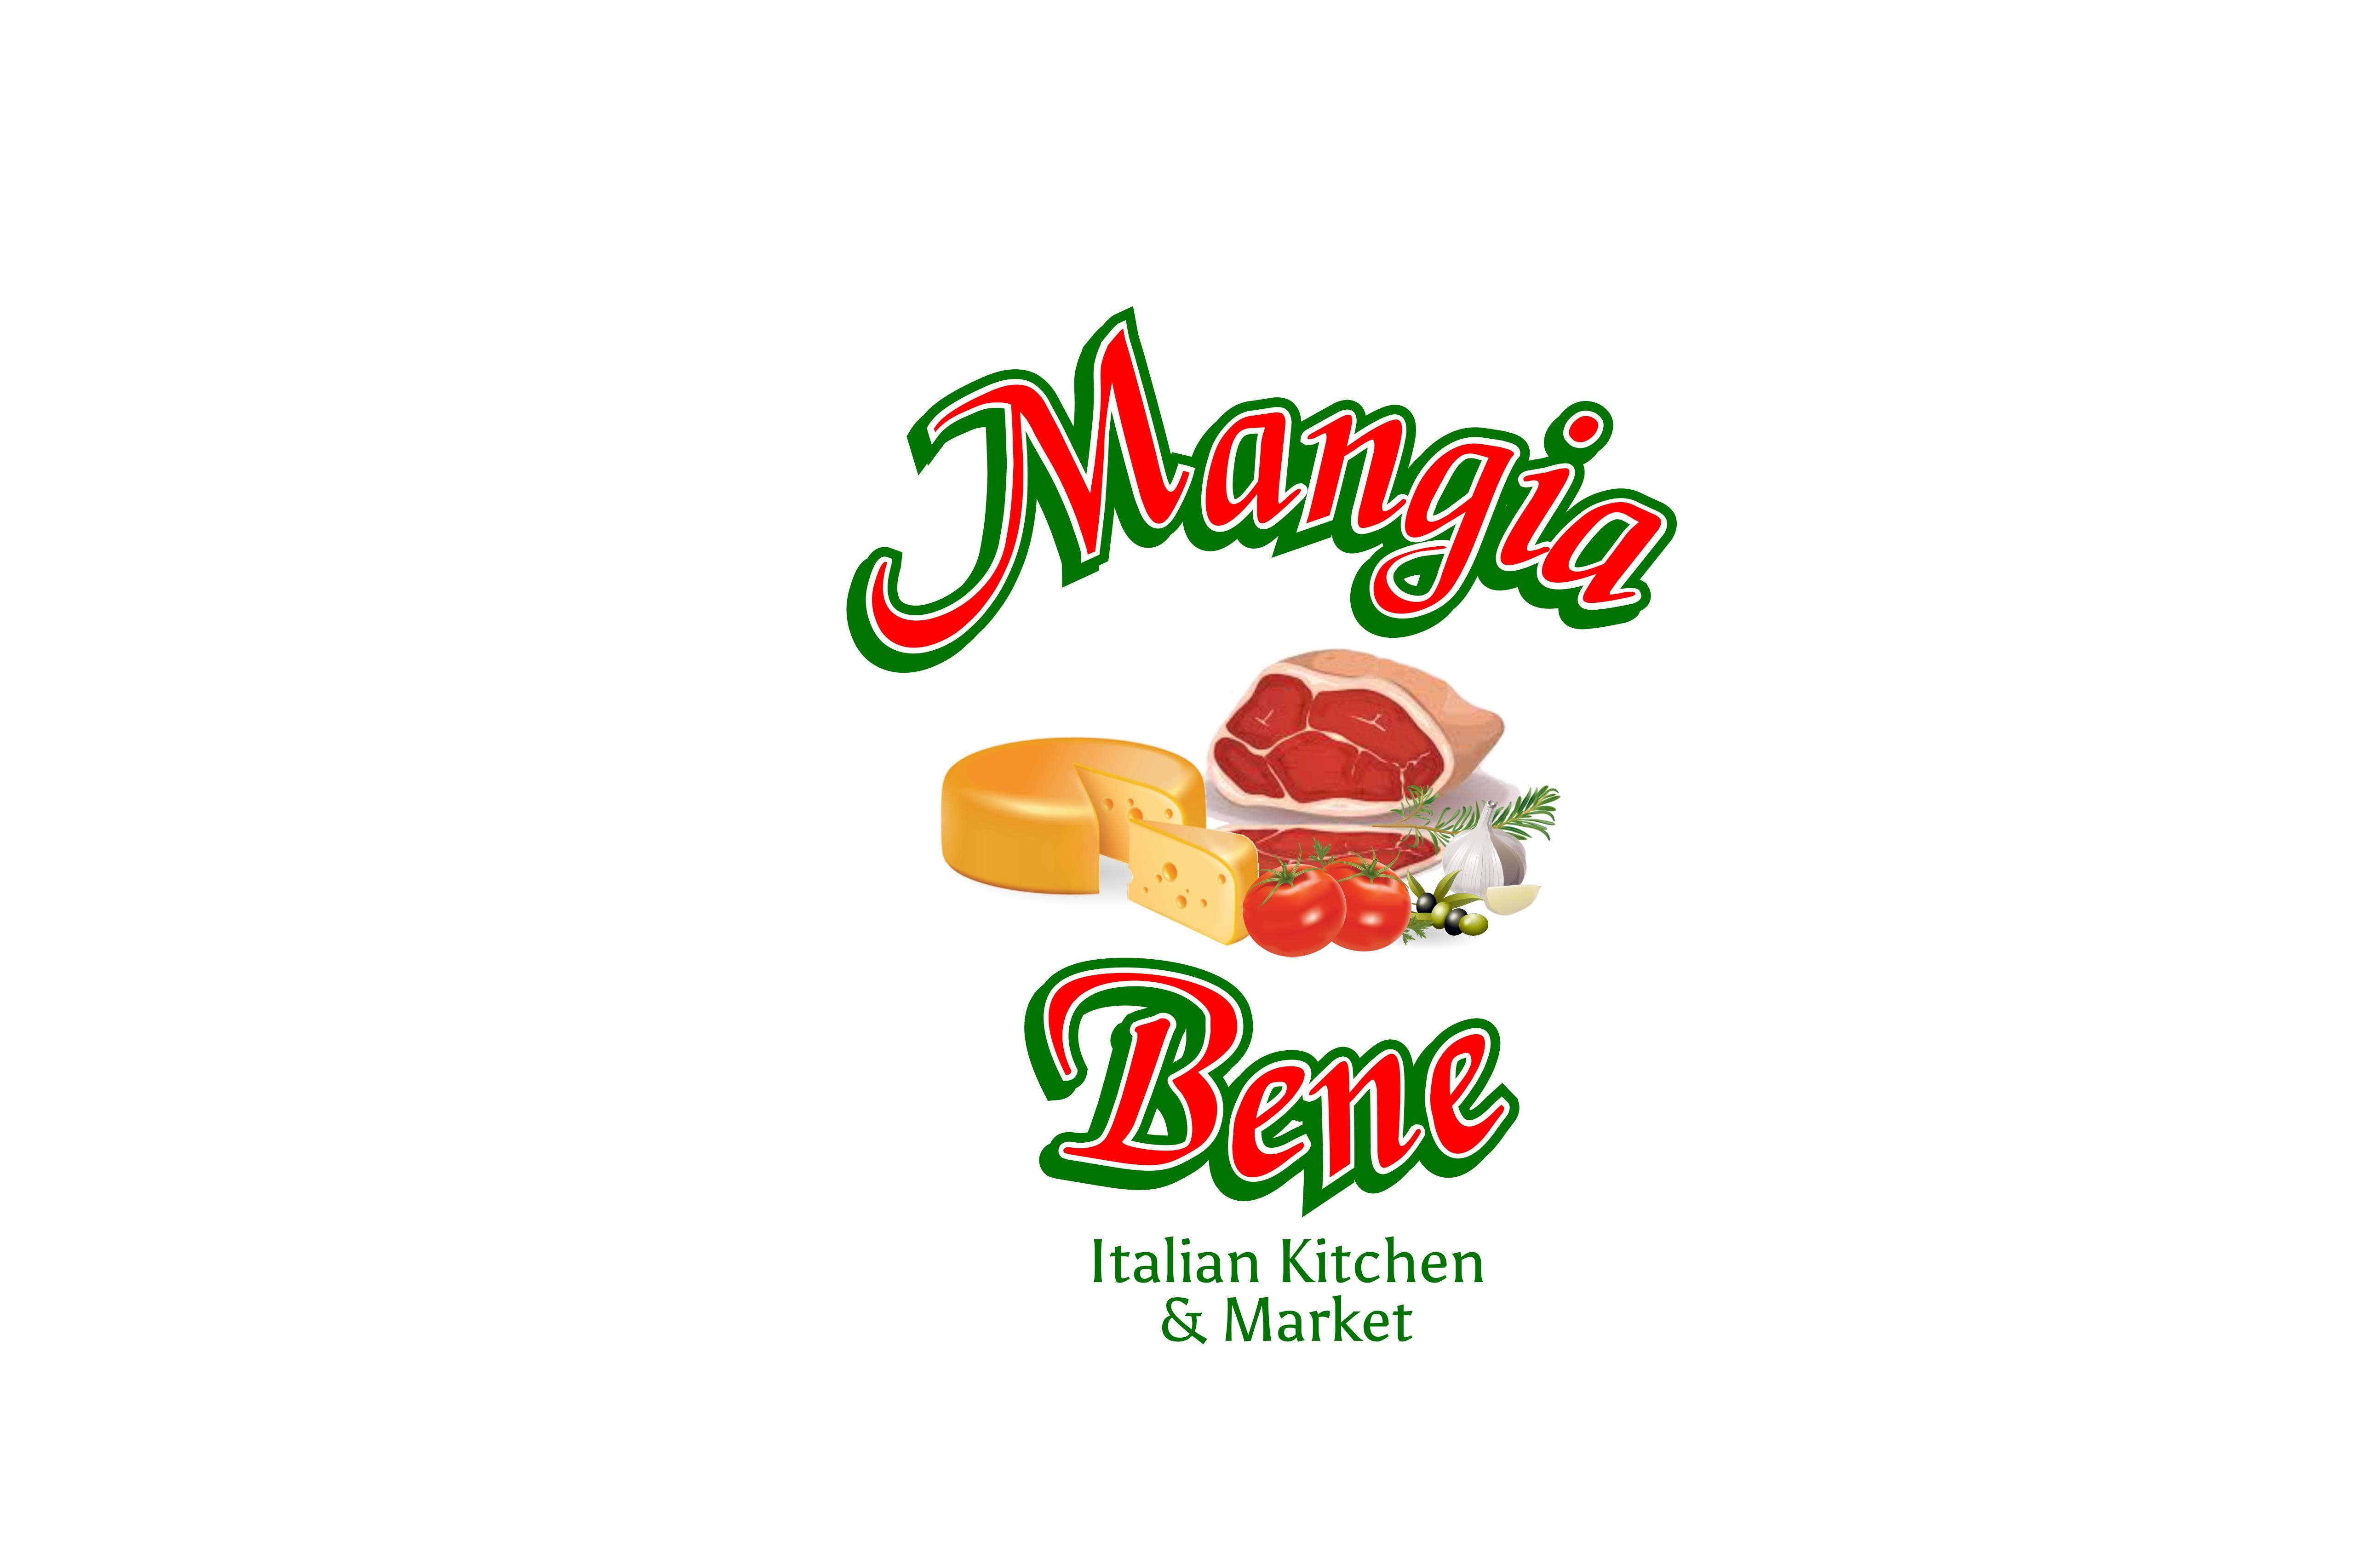 Sardos Mangia Bene Italian Kitchen & Catering